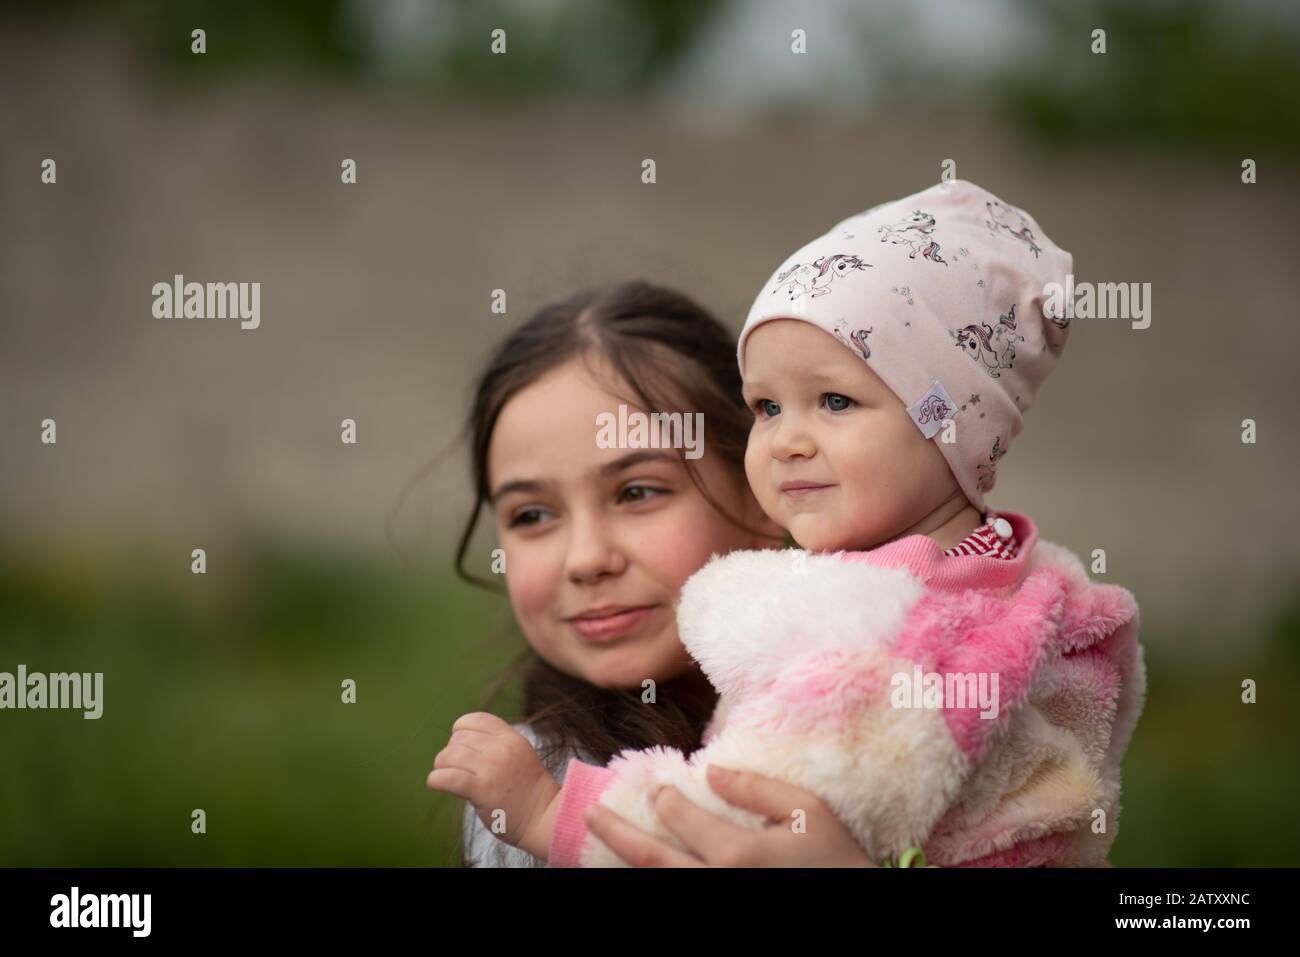 jolie jeune fille souriante et souriante debout sur une pelouse portant sa petite sœur dans ses bras. elle tient sa sœur dans ses bras. Fille de 10 ou 11 ans et 1 an Banque D'Images